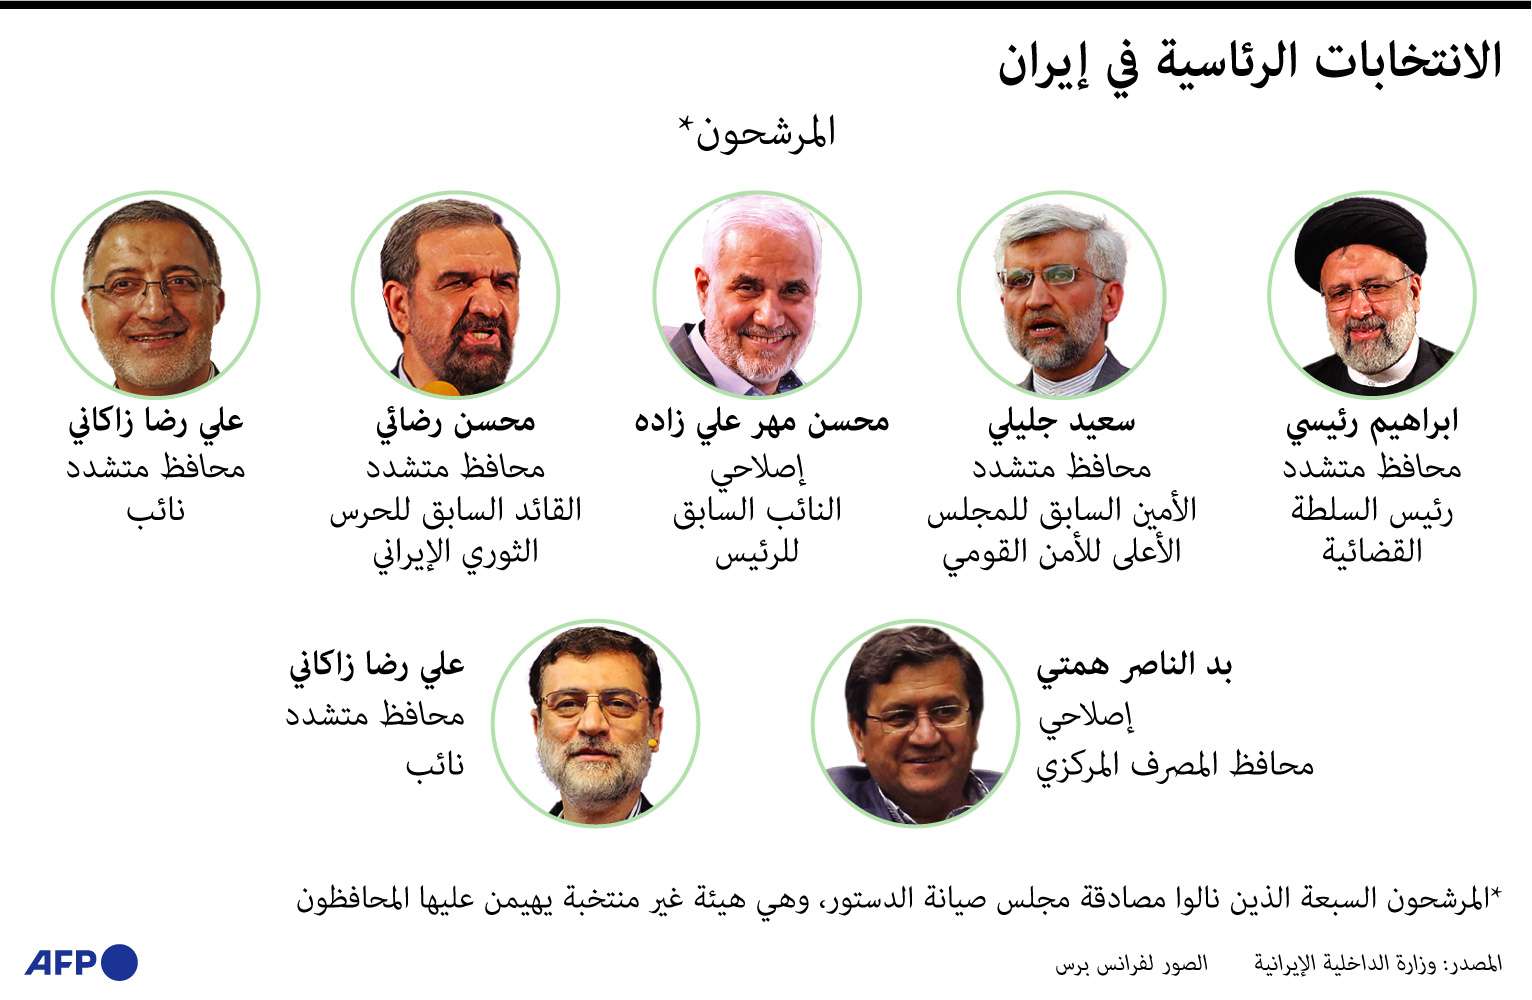 سبعة مرشحين يتنافسون على رئاسة إيران خمسة منهم من المحافظين واثنان من الاصلاحيين